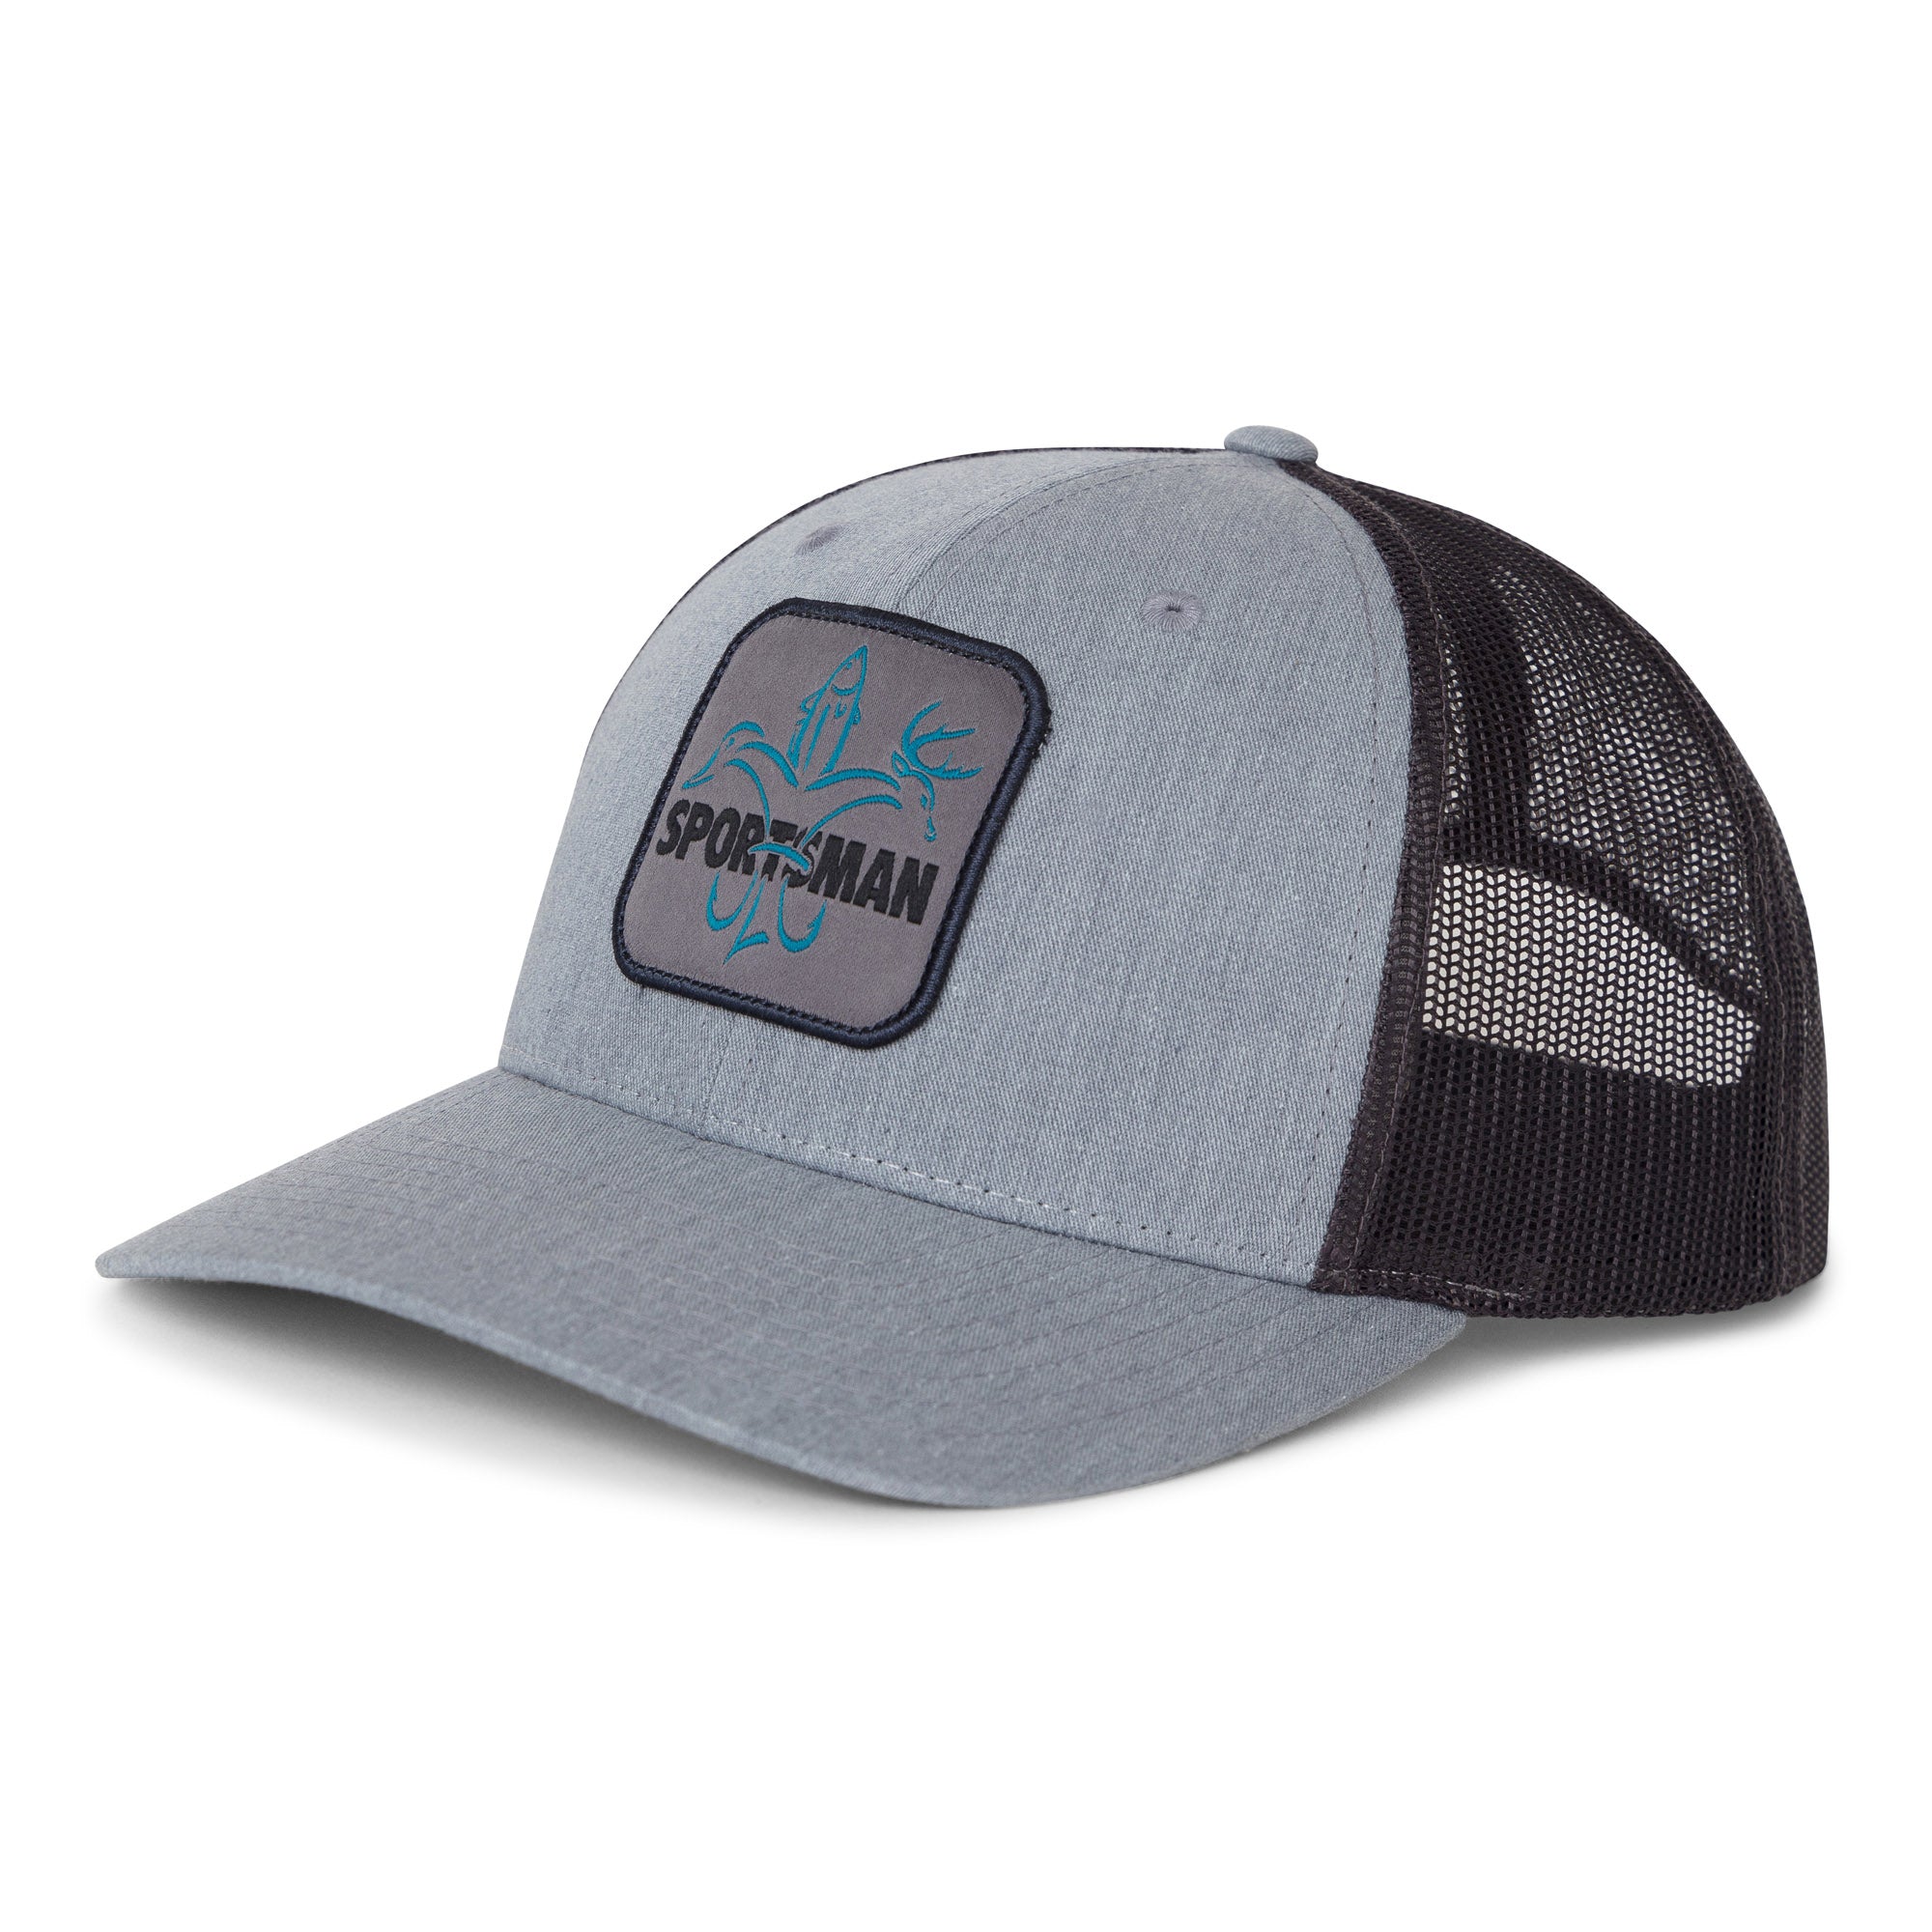 Sportsman Patch Hat - Heather Grey / Charcoal blue logo | Sportsman Gear